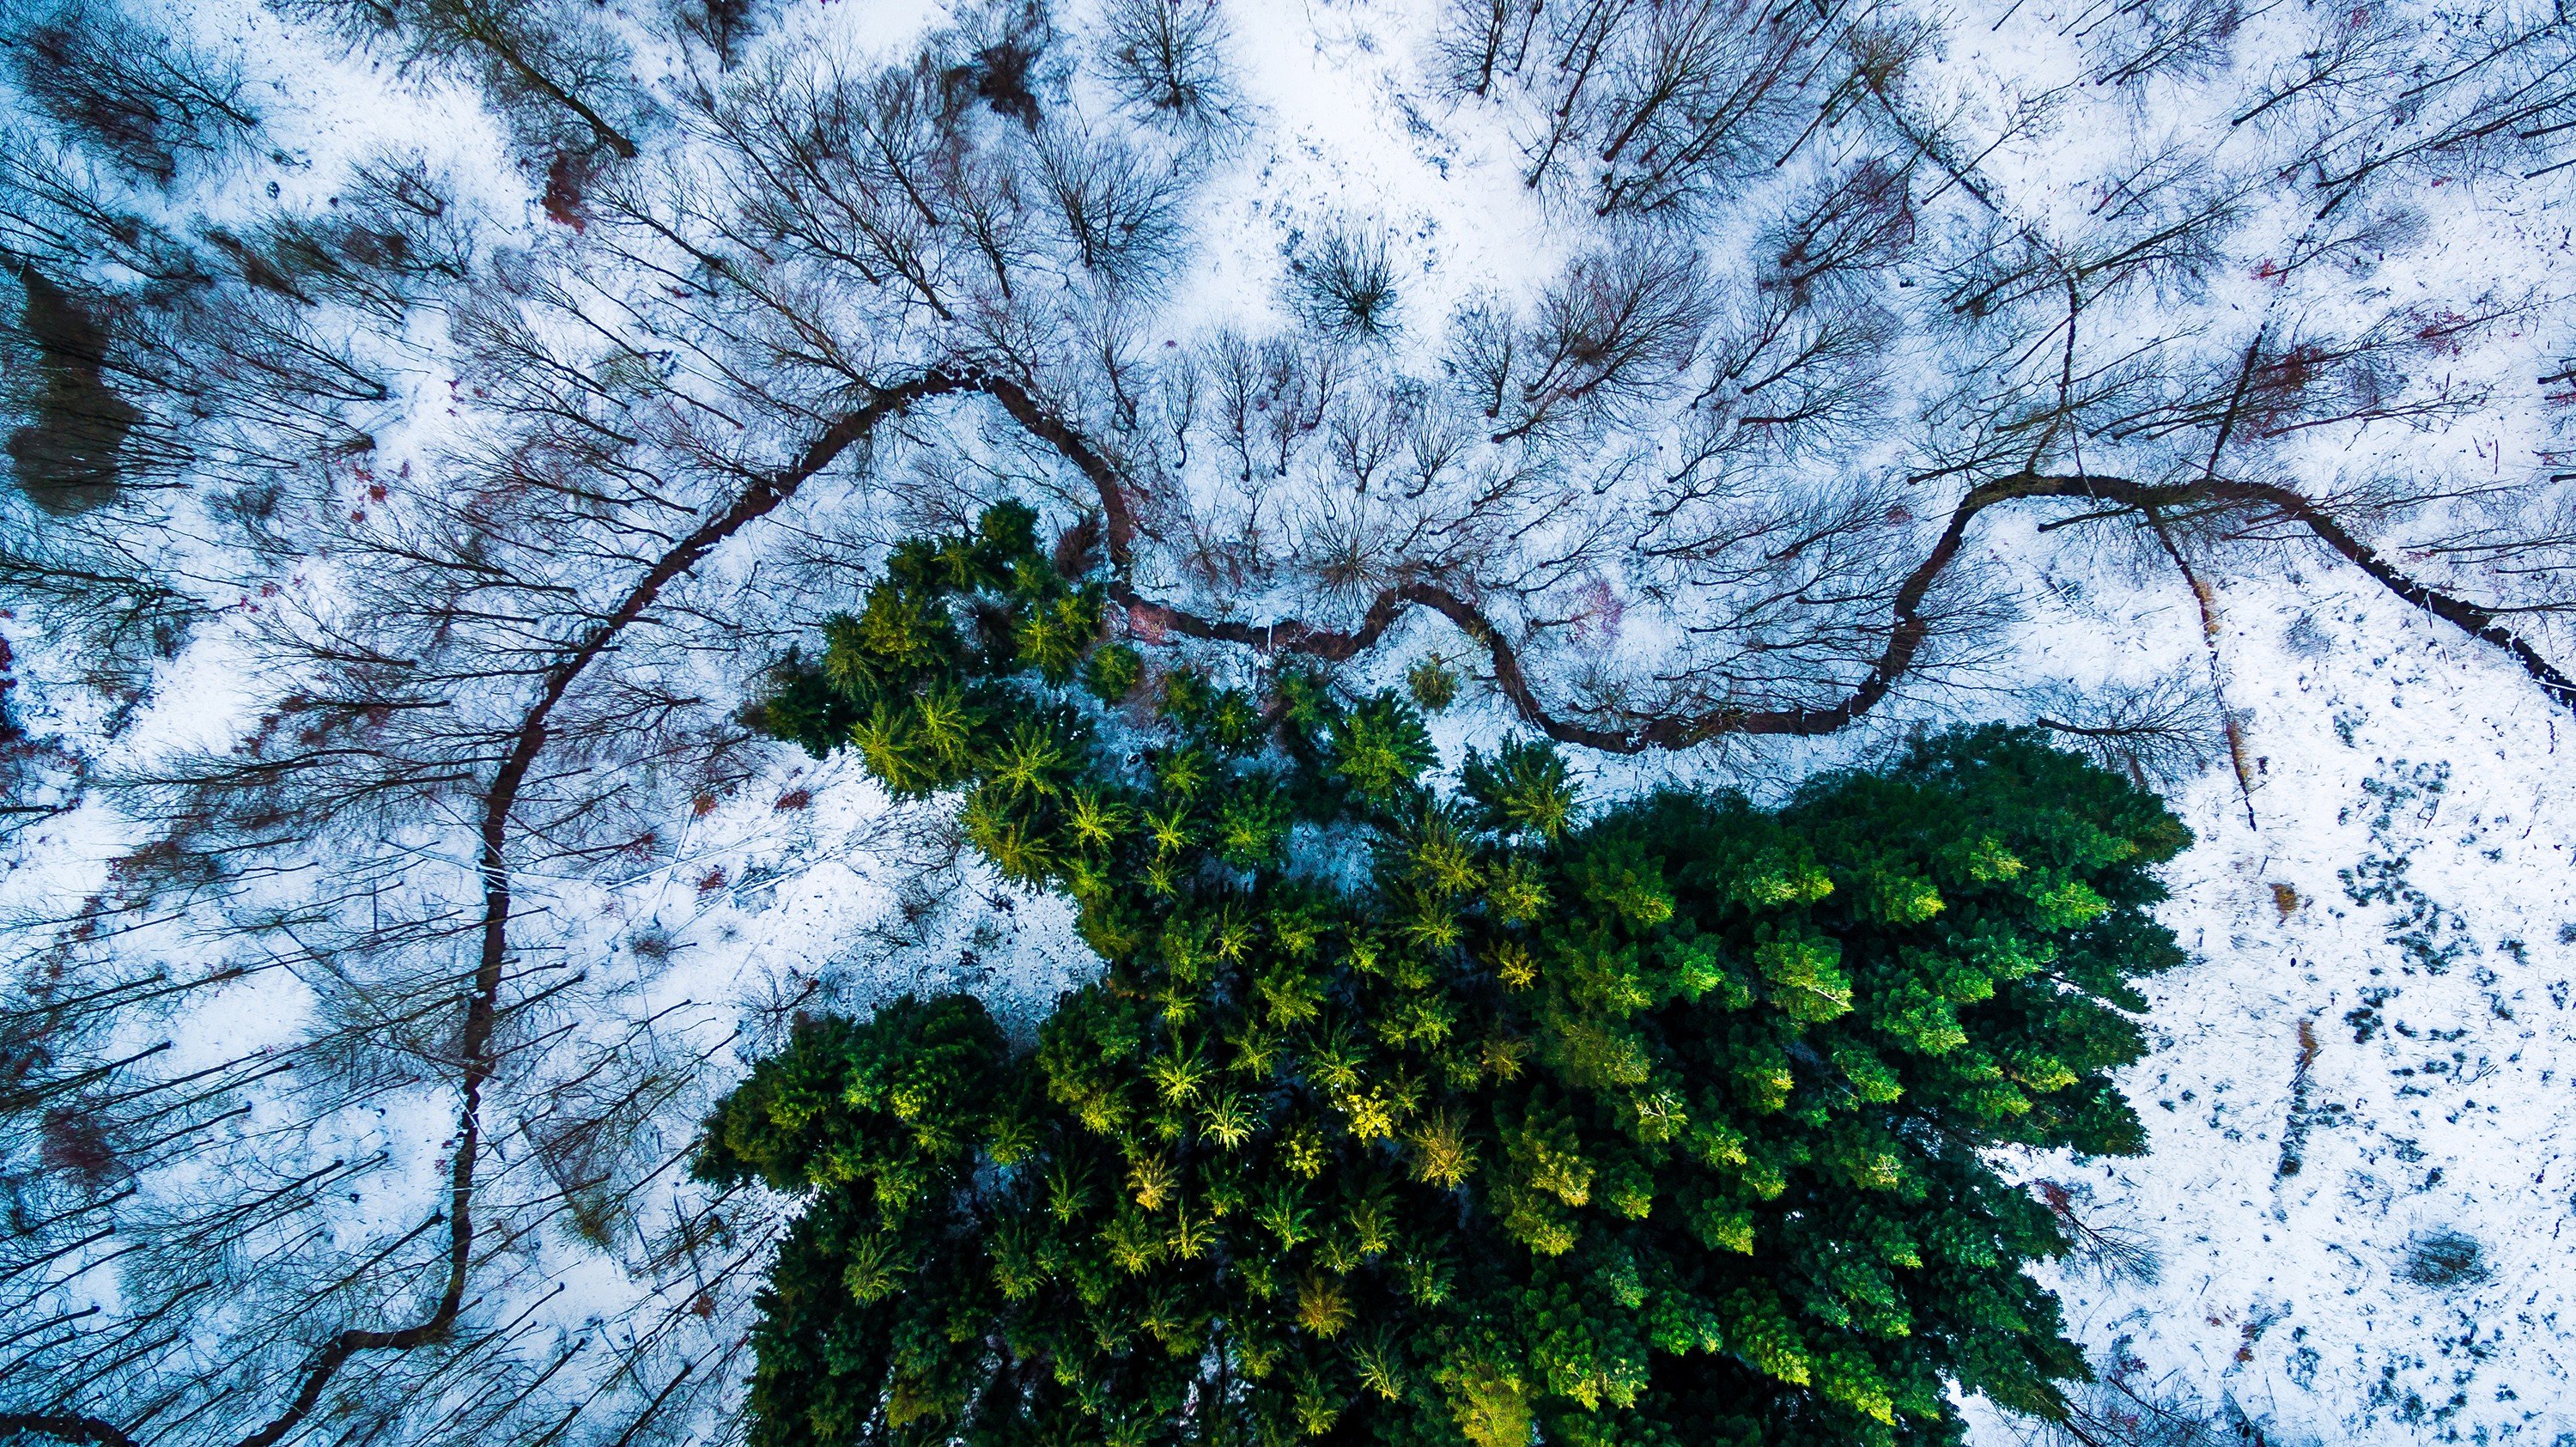 Michael Bernholdt, Drone, Denmark, Snow, Trees Wallpaper